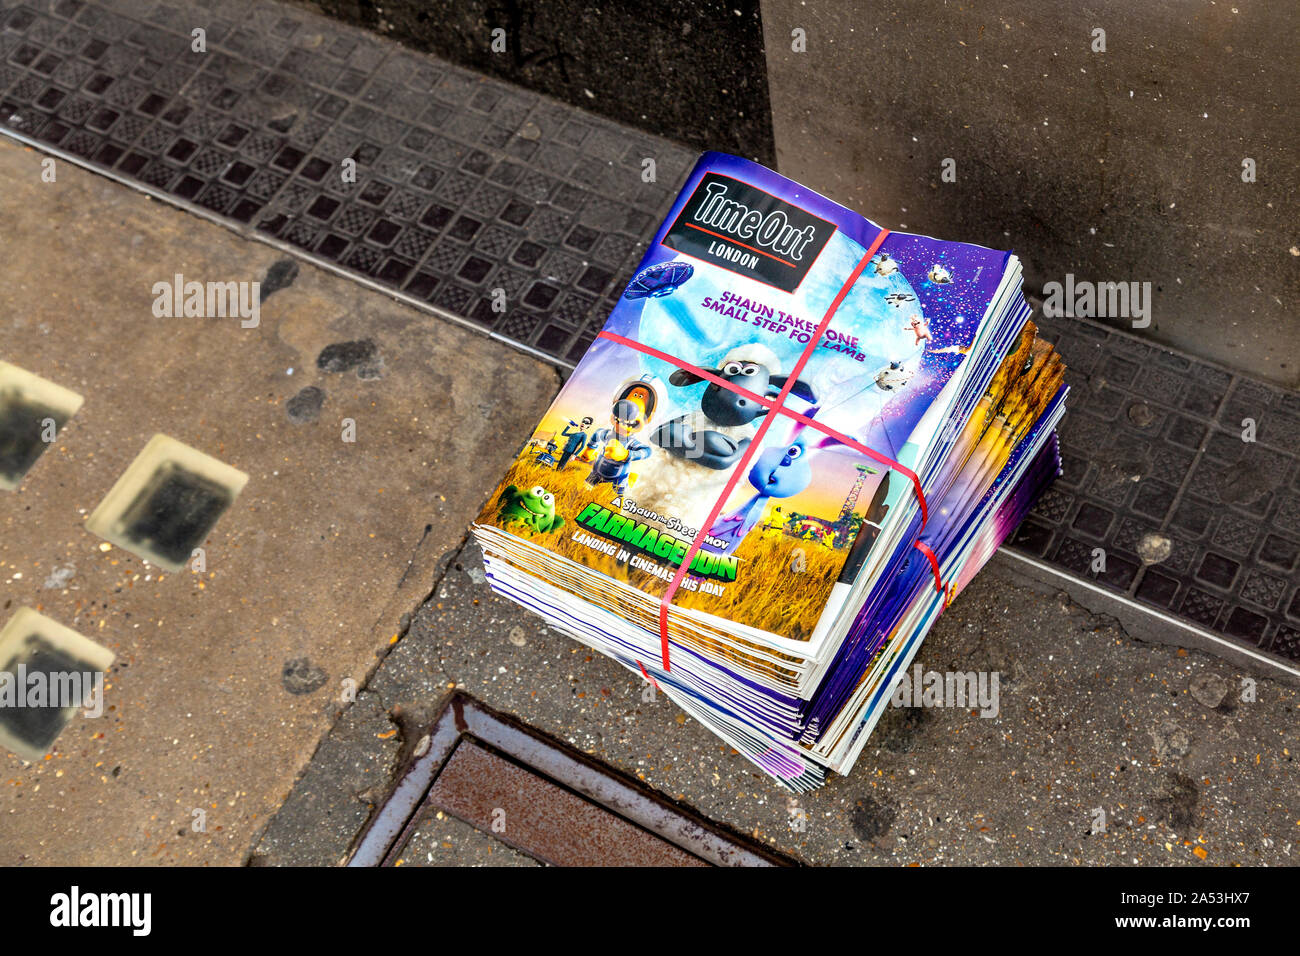 Une pile de magazines Londres TimeOut libre sur le terrain, London, UK Banque D'Images